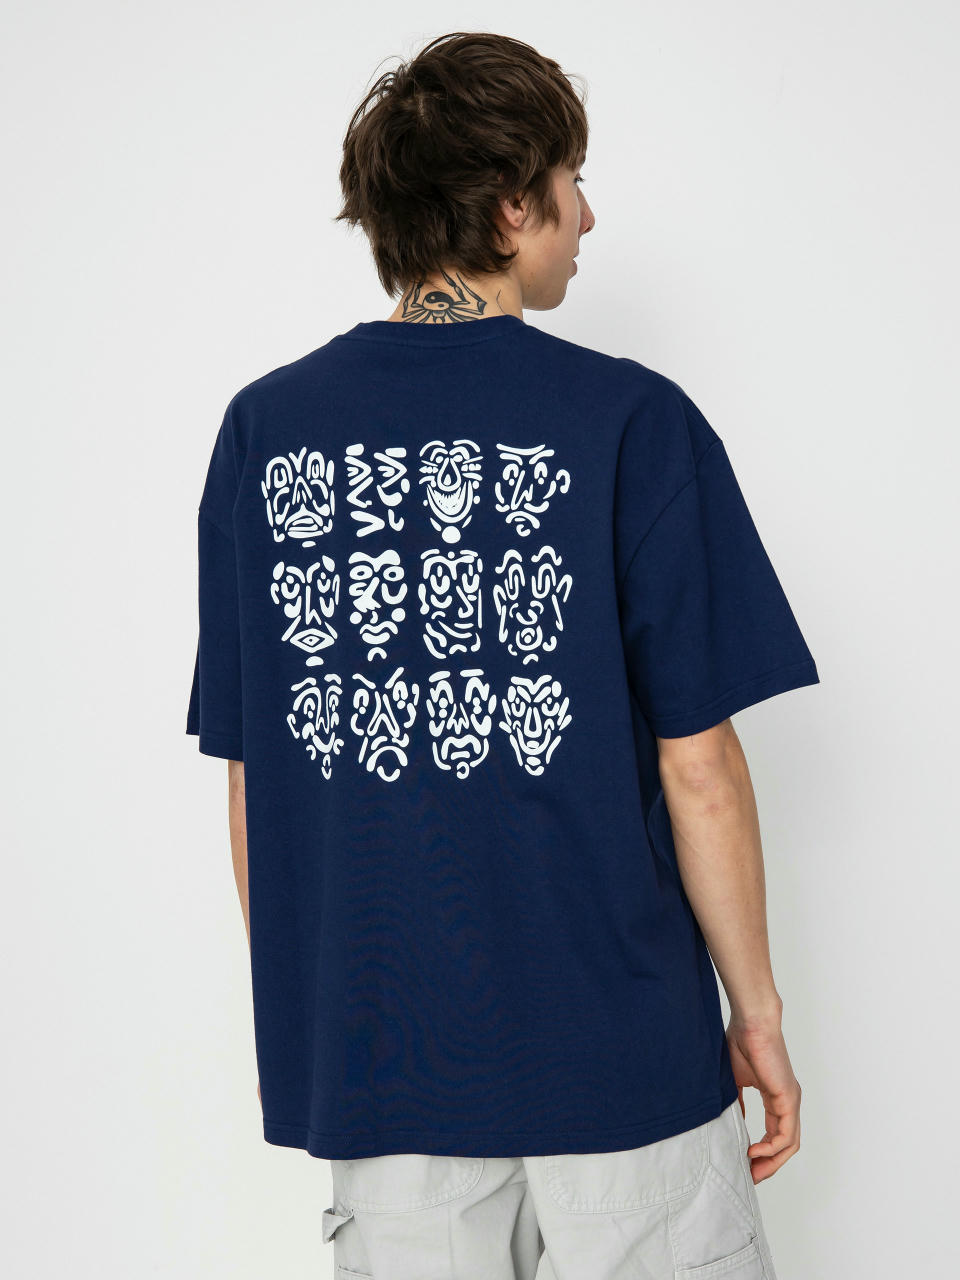 Polar Skate 12 Faces T-Shirt (dark blue)